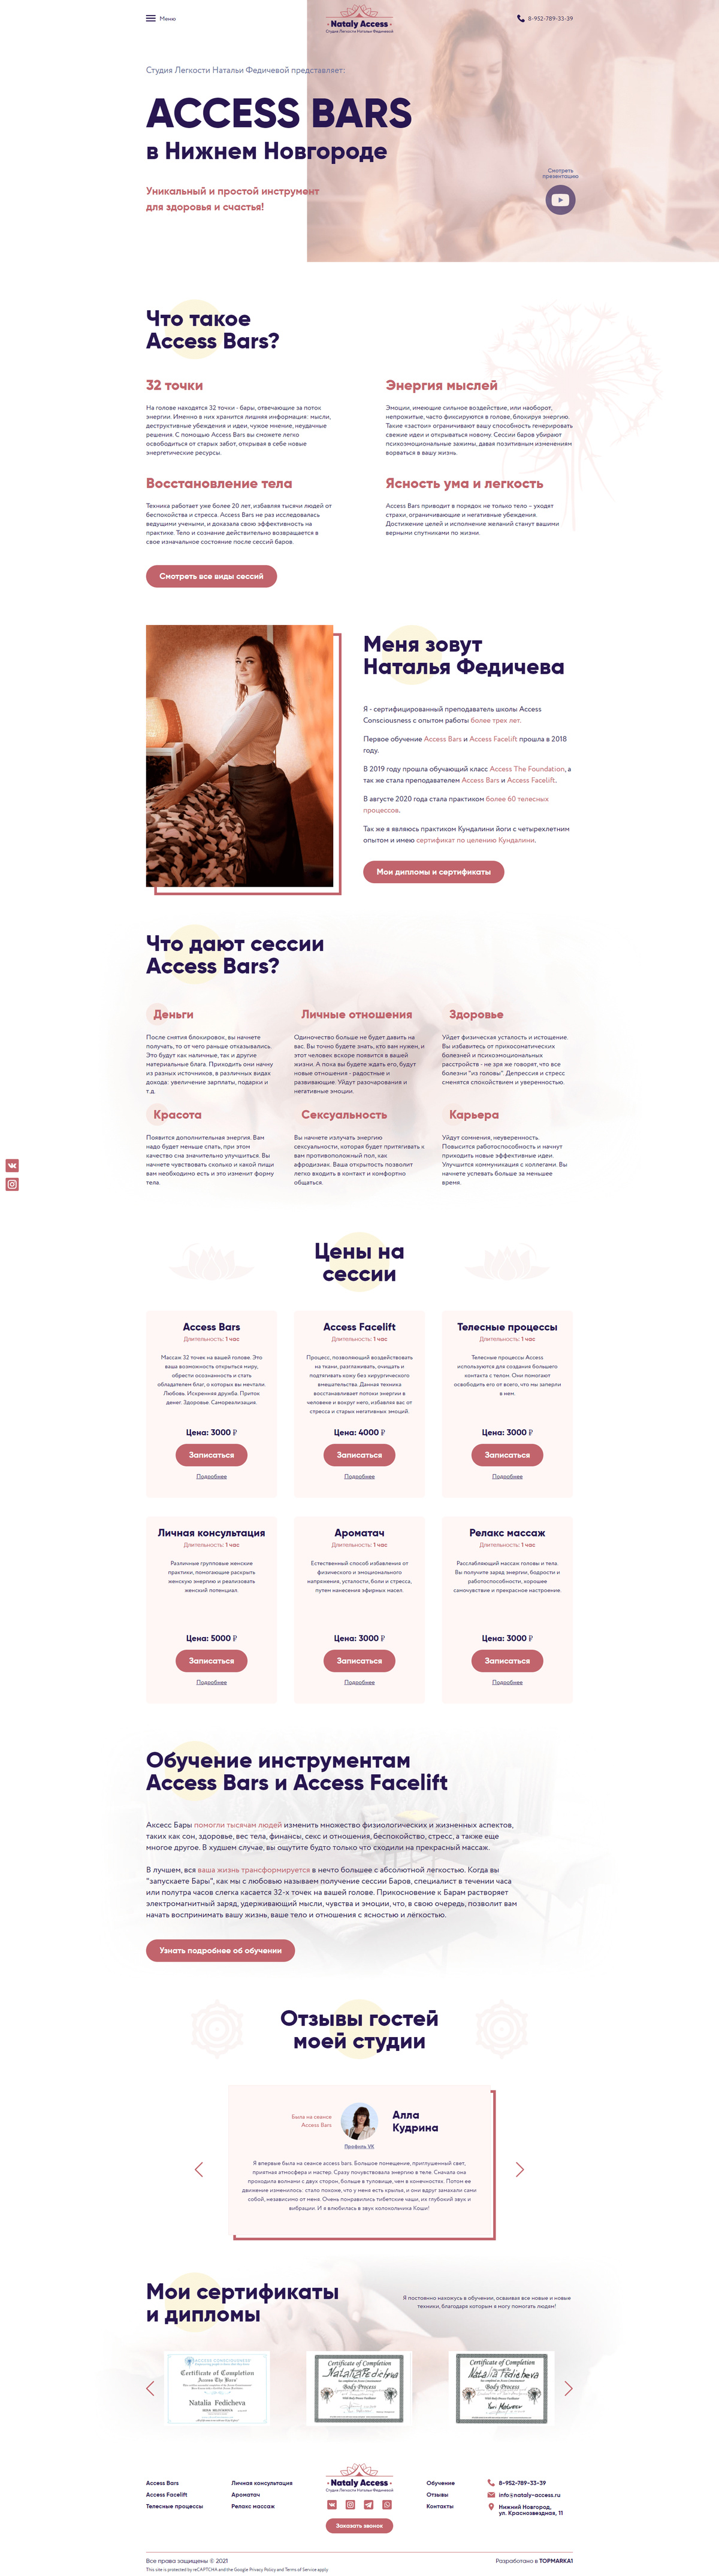 Создание сайта для компании по Access Bars и Access Facelift